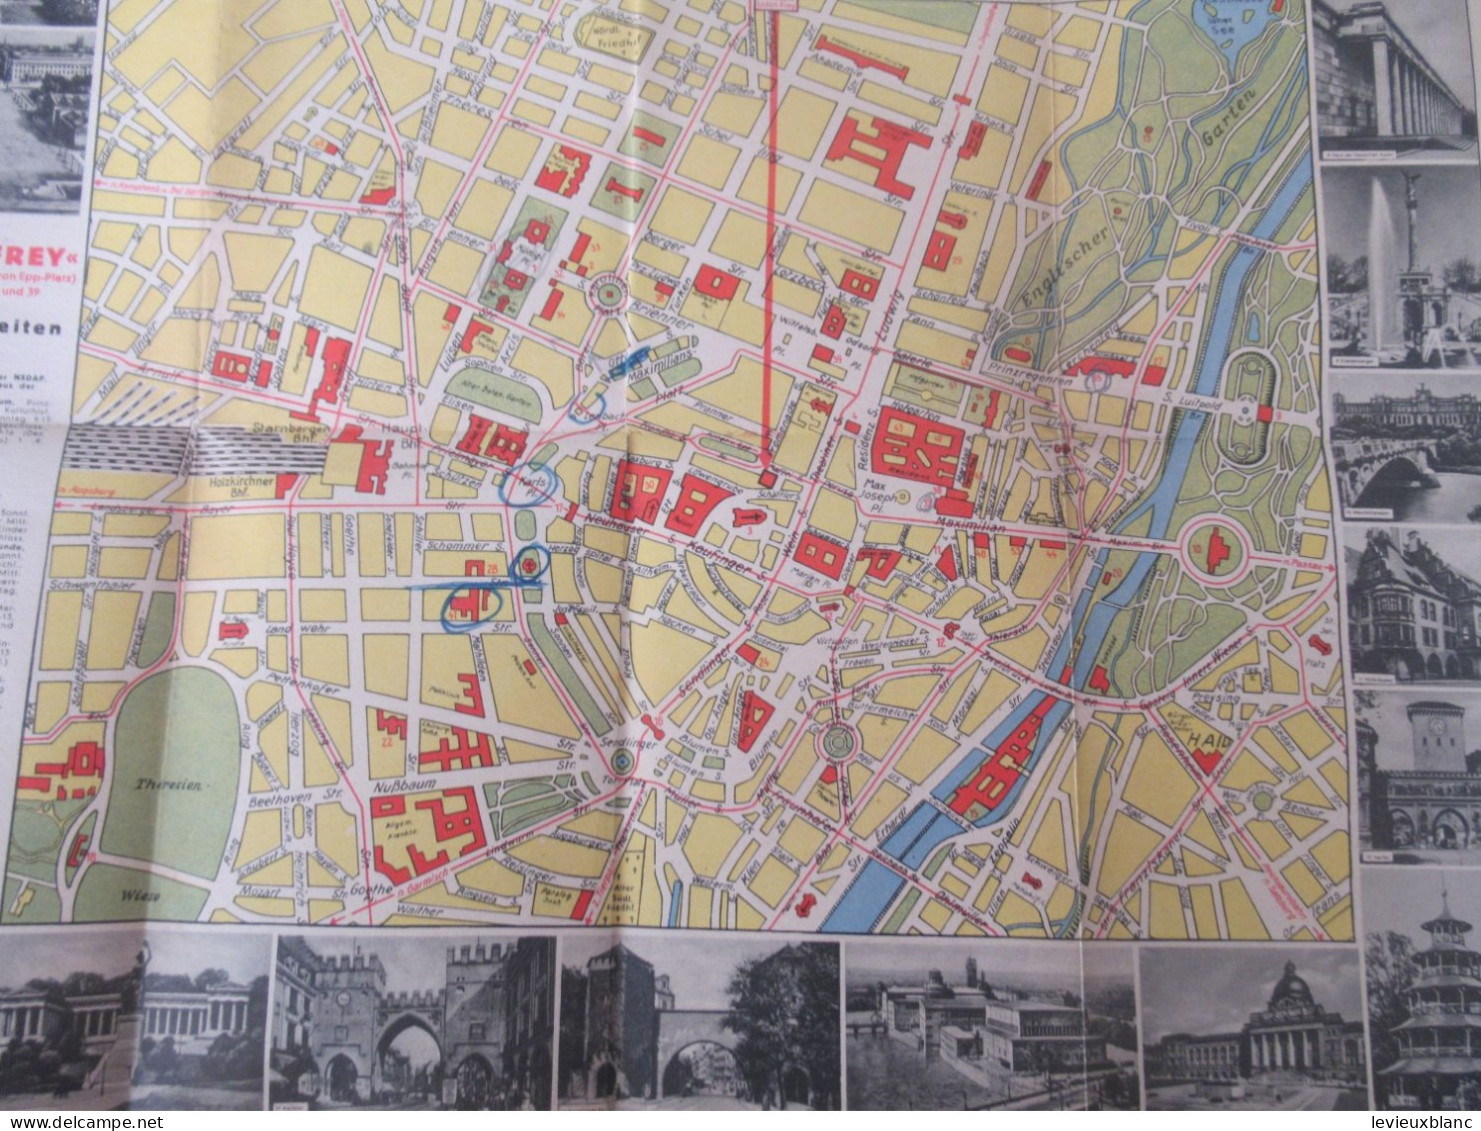 Munich/ München / Bavière/ Plan De La Ville / Offert Par LODEN-FREY/ Loden Fabrik / 1937-1938                   PGC564 - Baviera